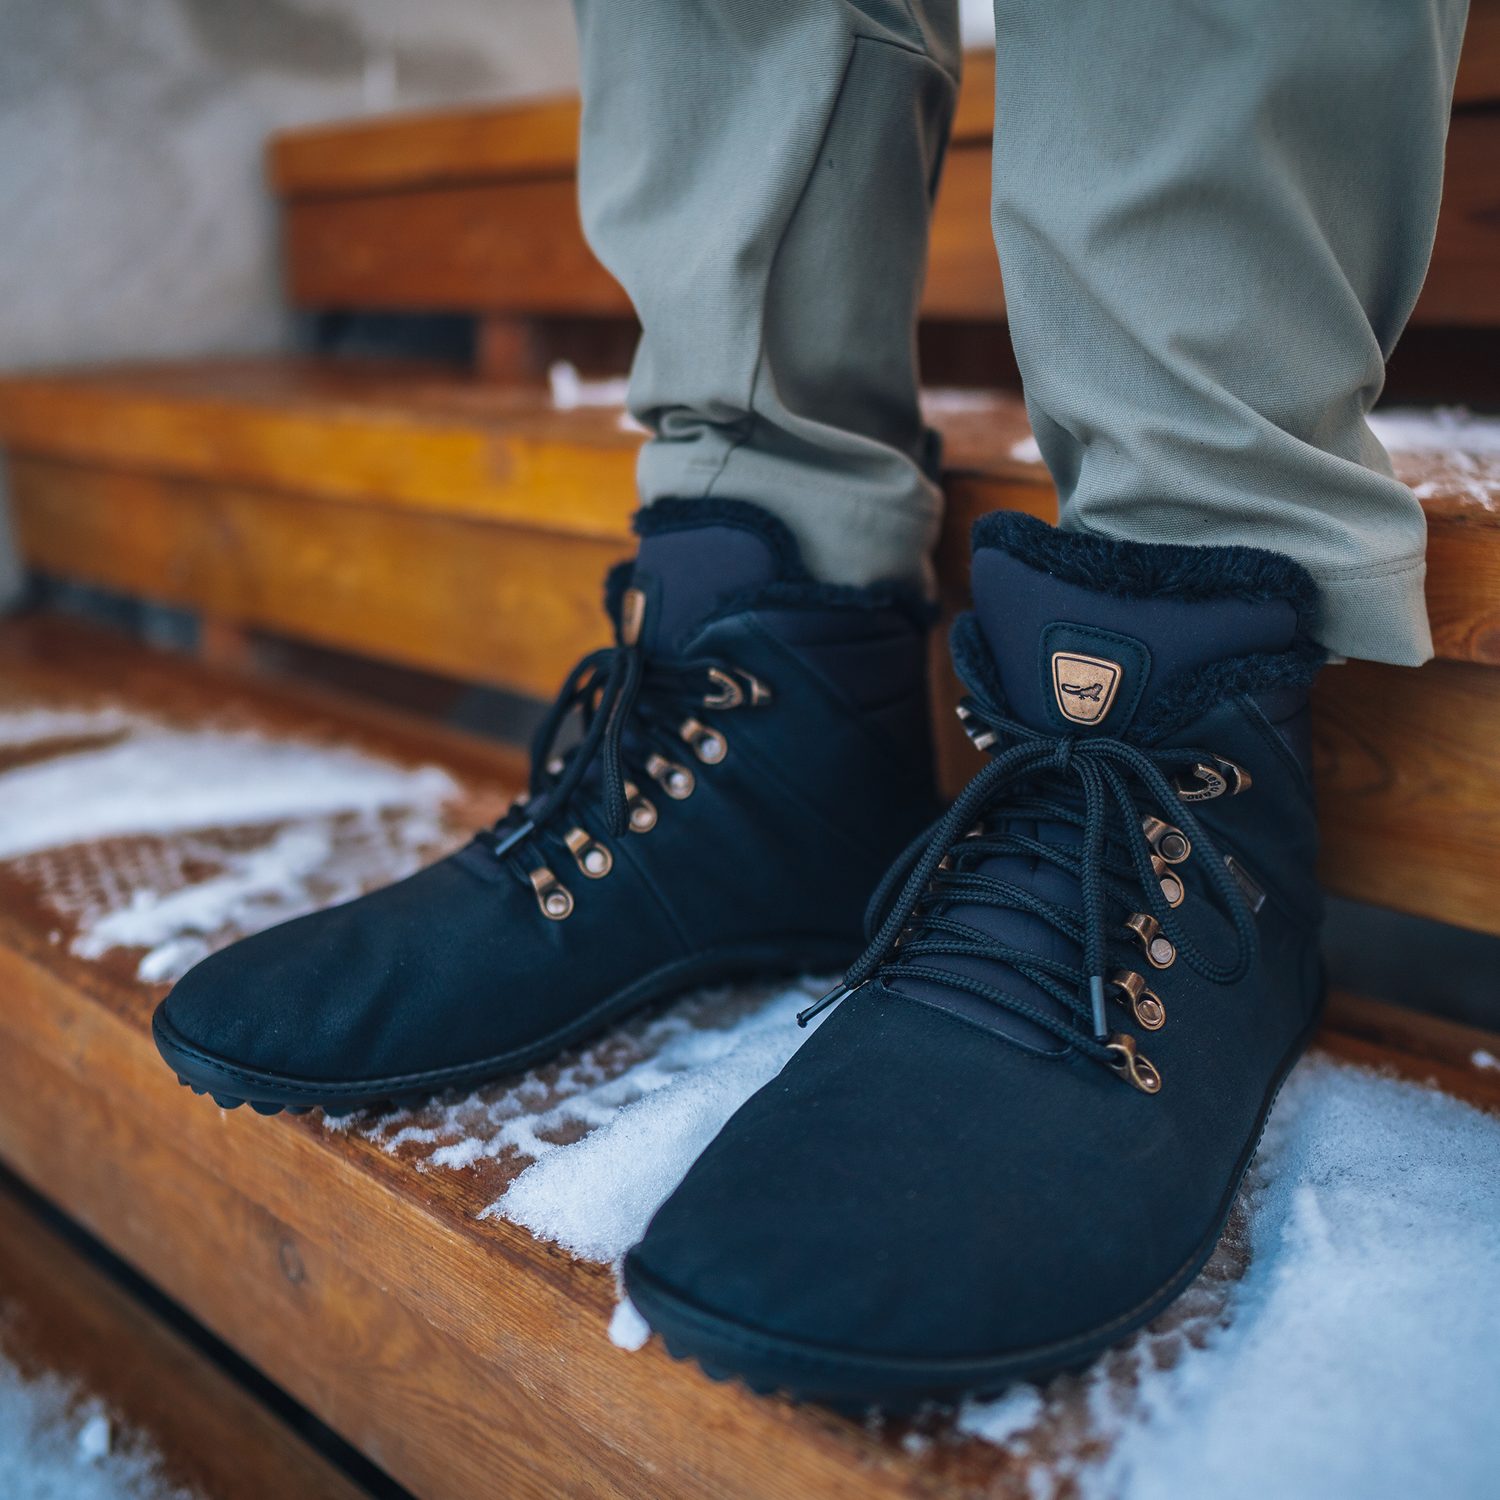 naBOSo – RECENZE LEGUANO HUSKY: Pohodlné bačkory do nepohodlných podmínek –  Zažijte pohodlí barefoot bot.